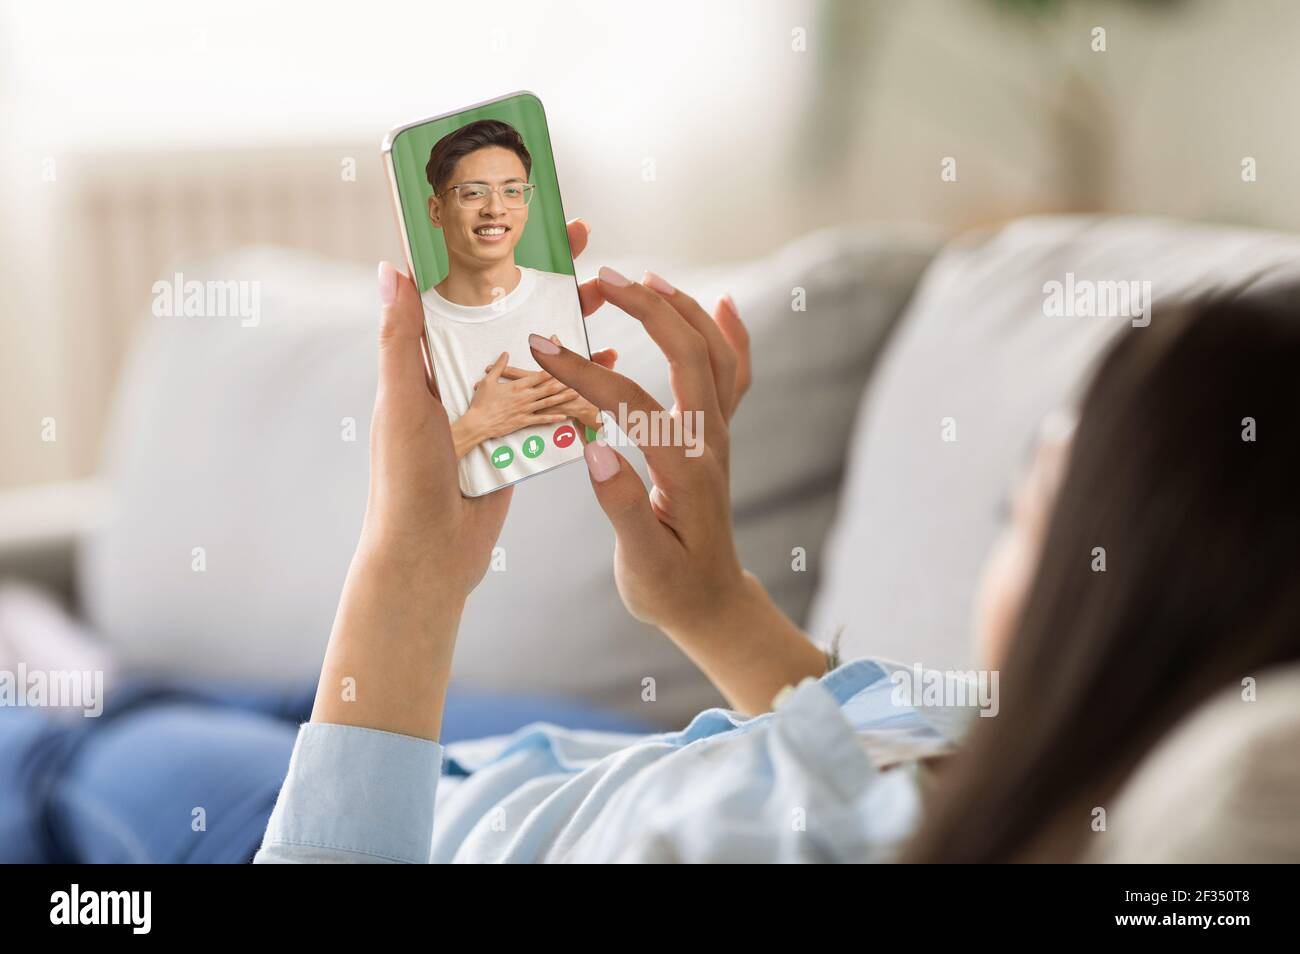 Chat online sullo schermo dello smartphone, relazioni remote durante il soggiorno e relax sul divano con il dispositivo Foto Stock